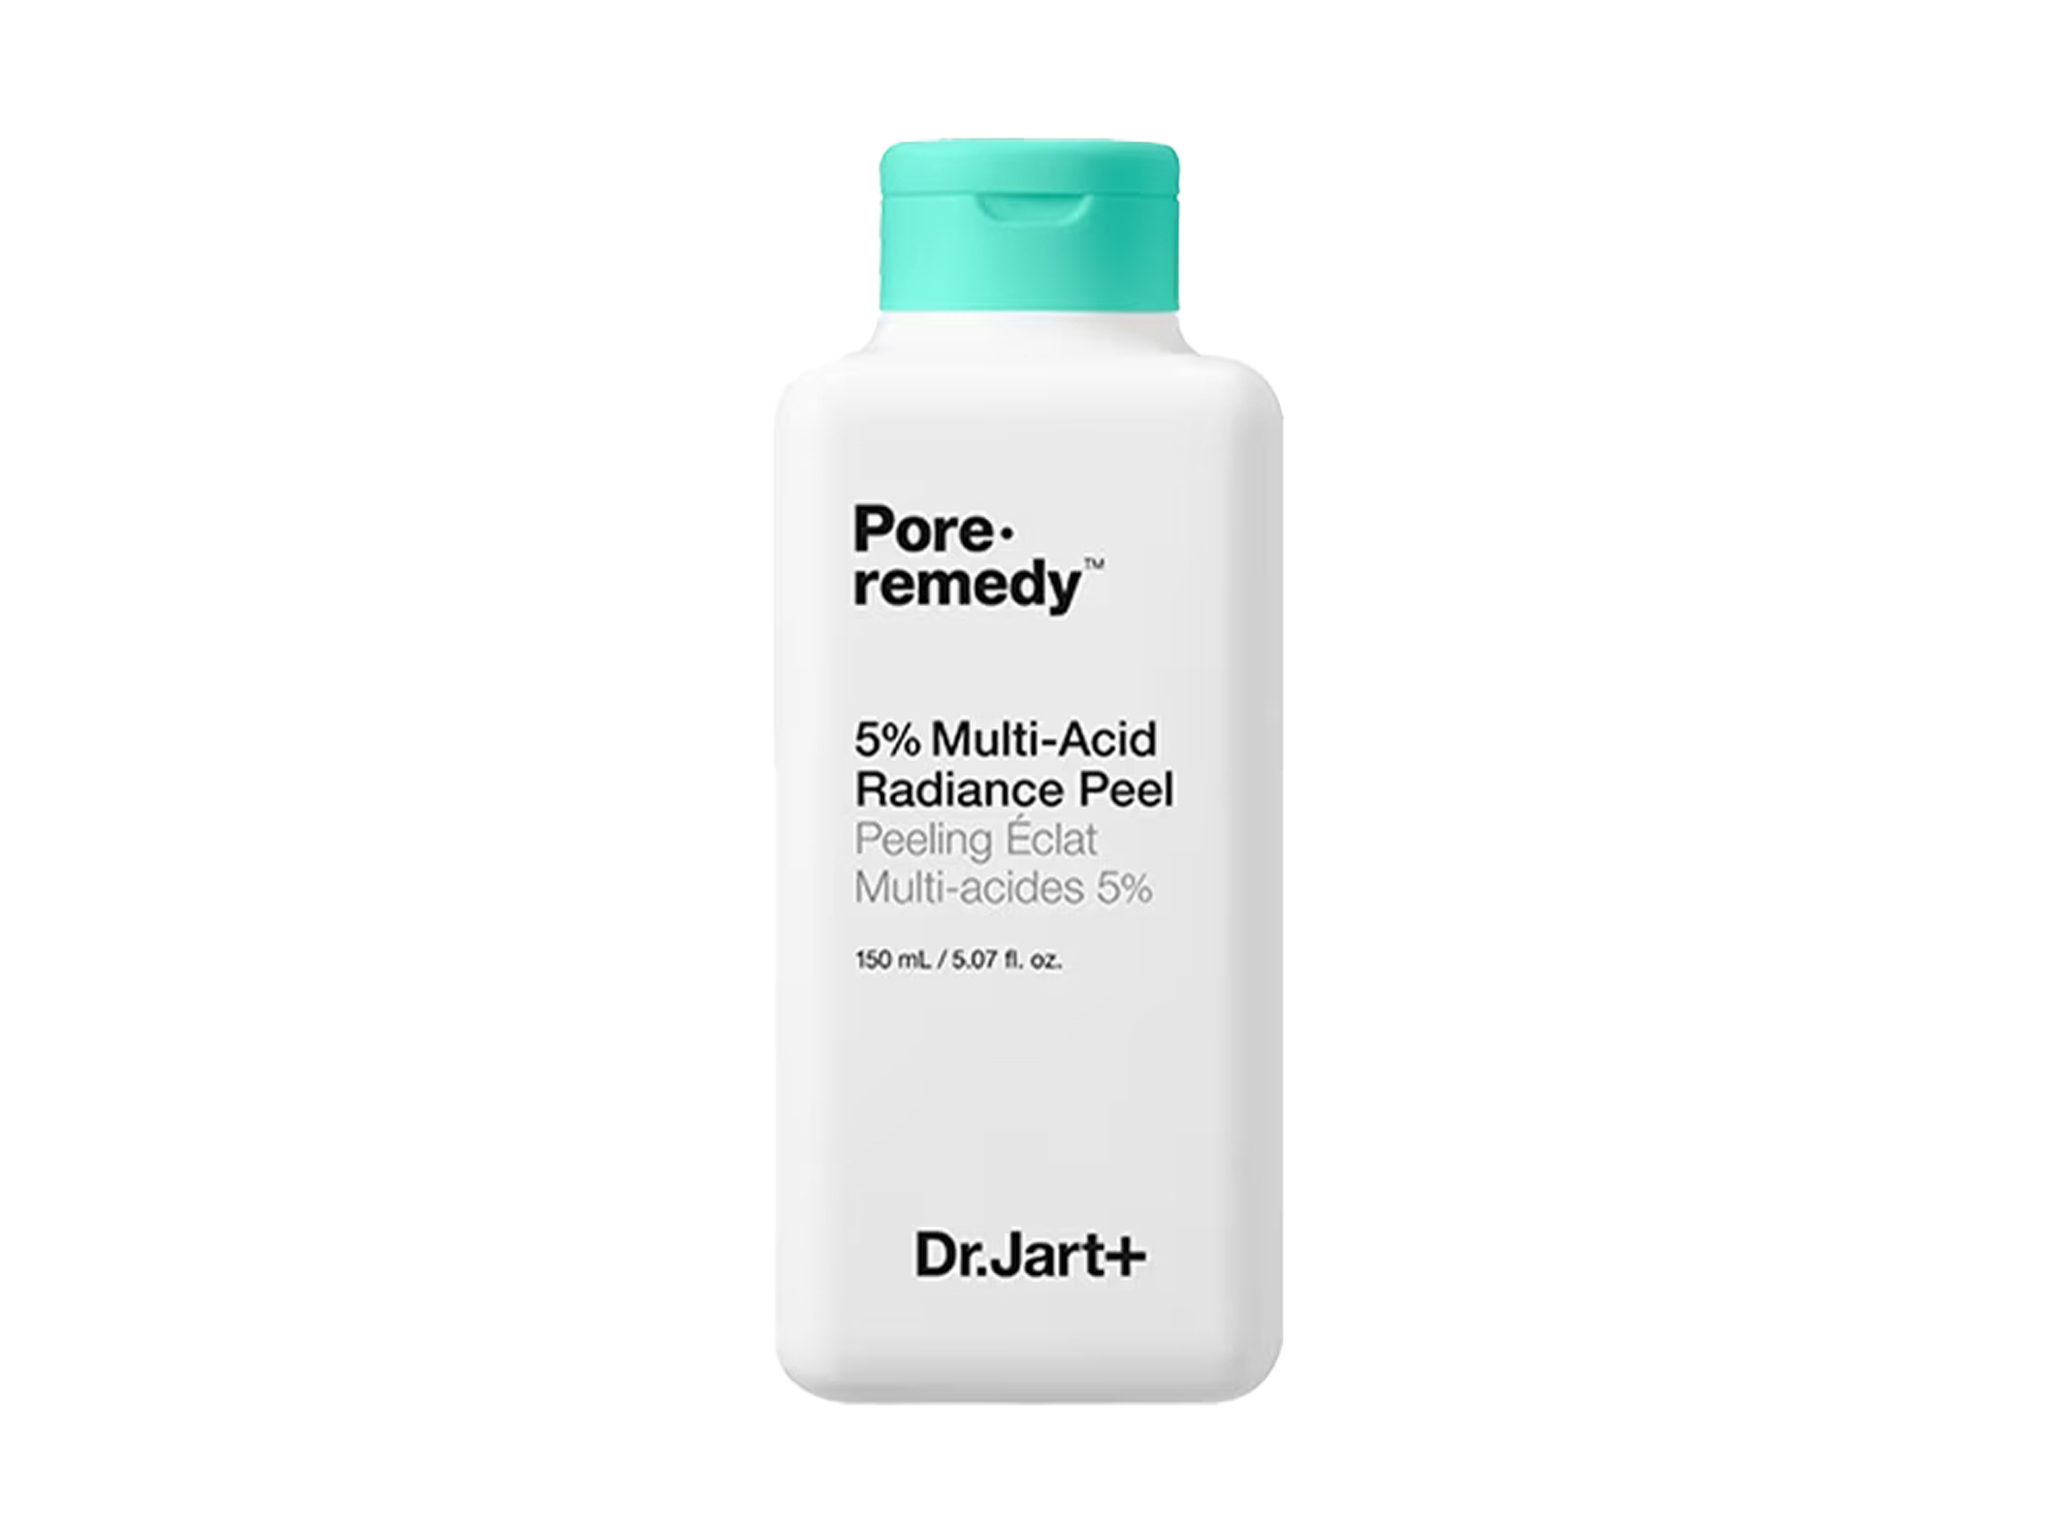 Dr Jart+ pore remedy 5% multi-acid radiance peel